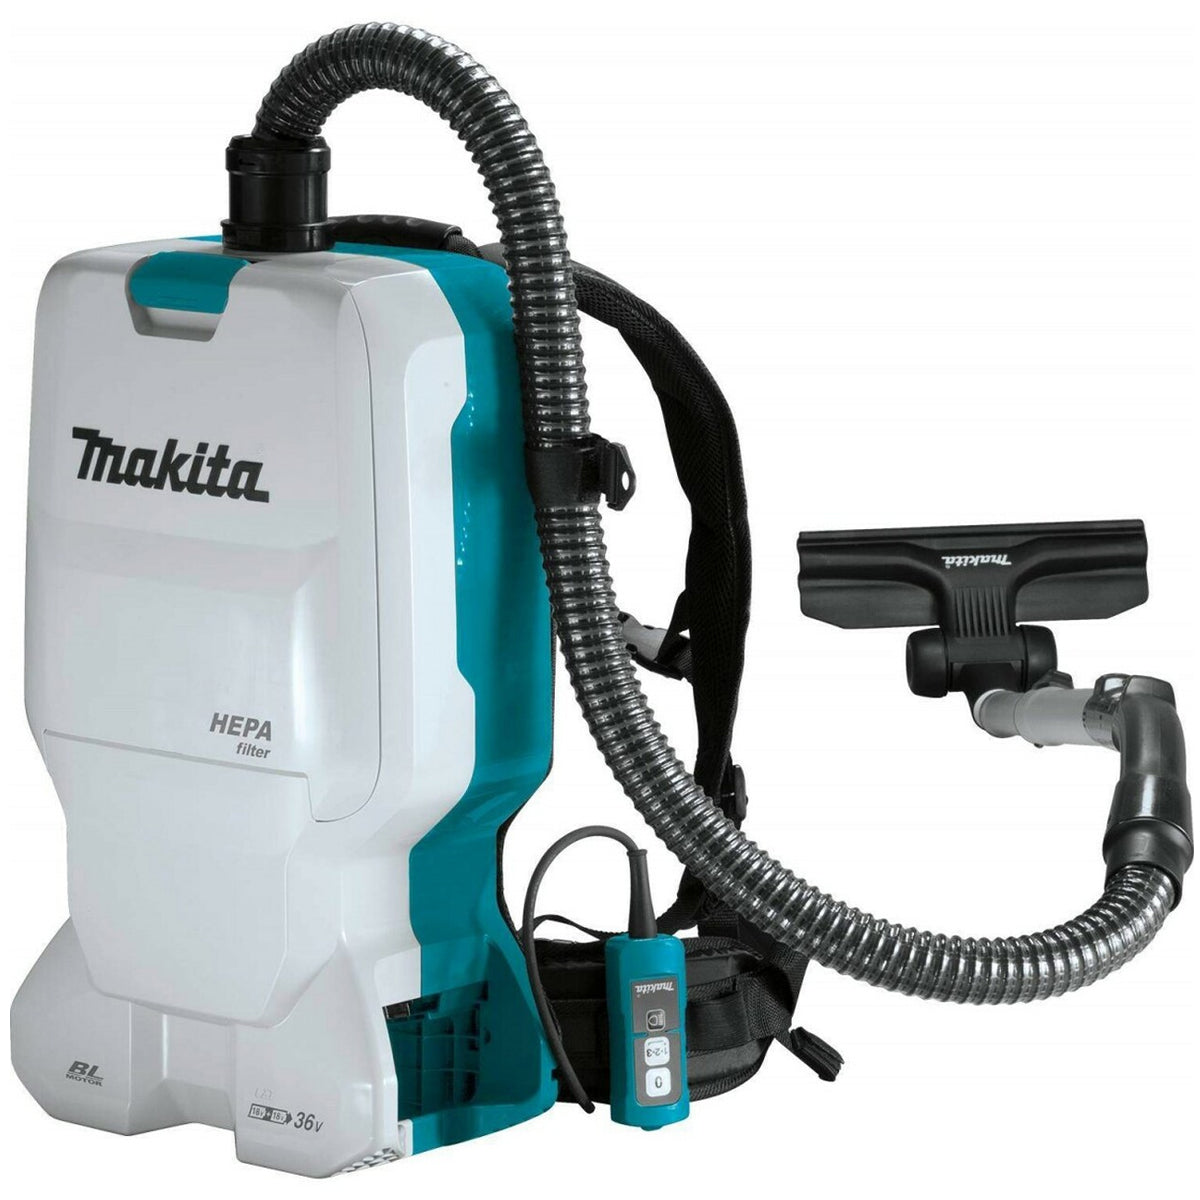 Makita DVC660Z 36V Brushless Backpack Vacuum Cleaner Body Only